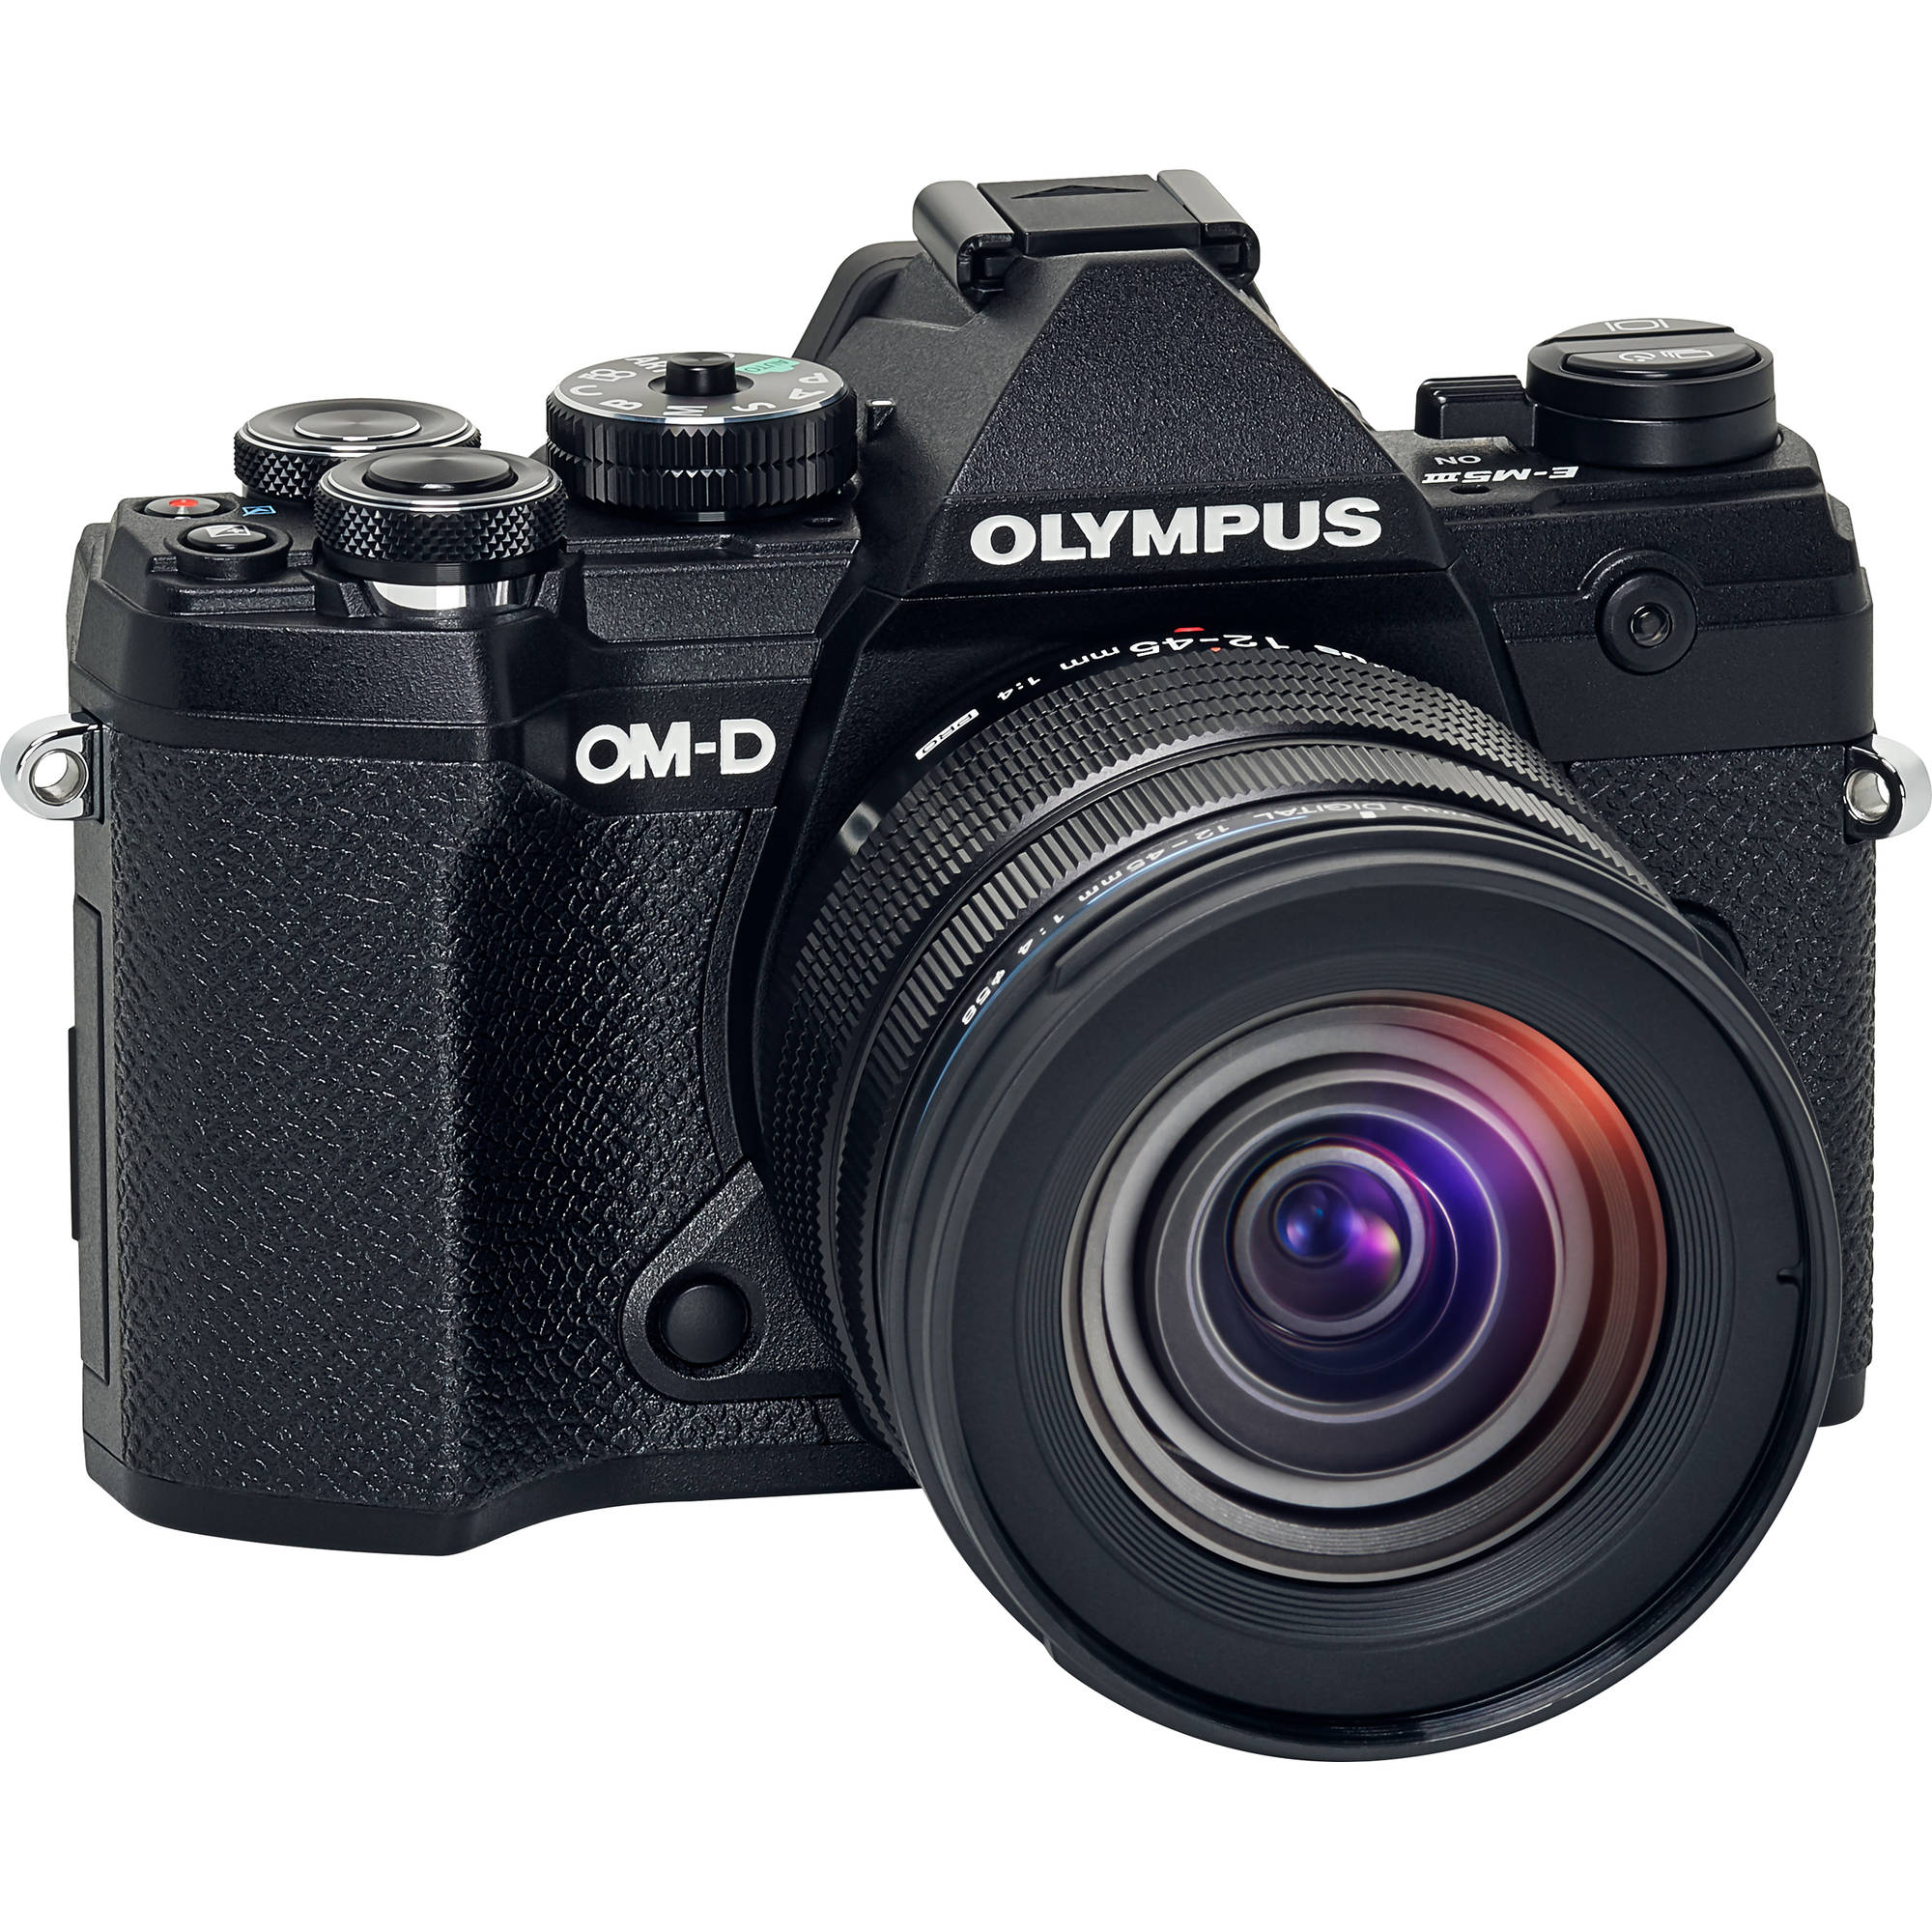 Cámara sin espejo Olympus OM-D E-M5 Mark III con lente de 12-45 mm (negro)